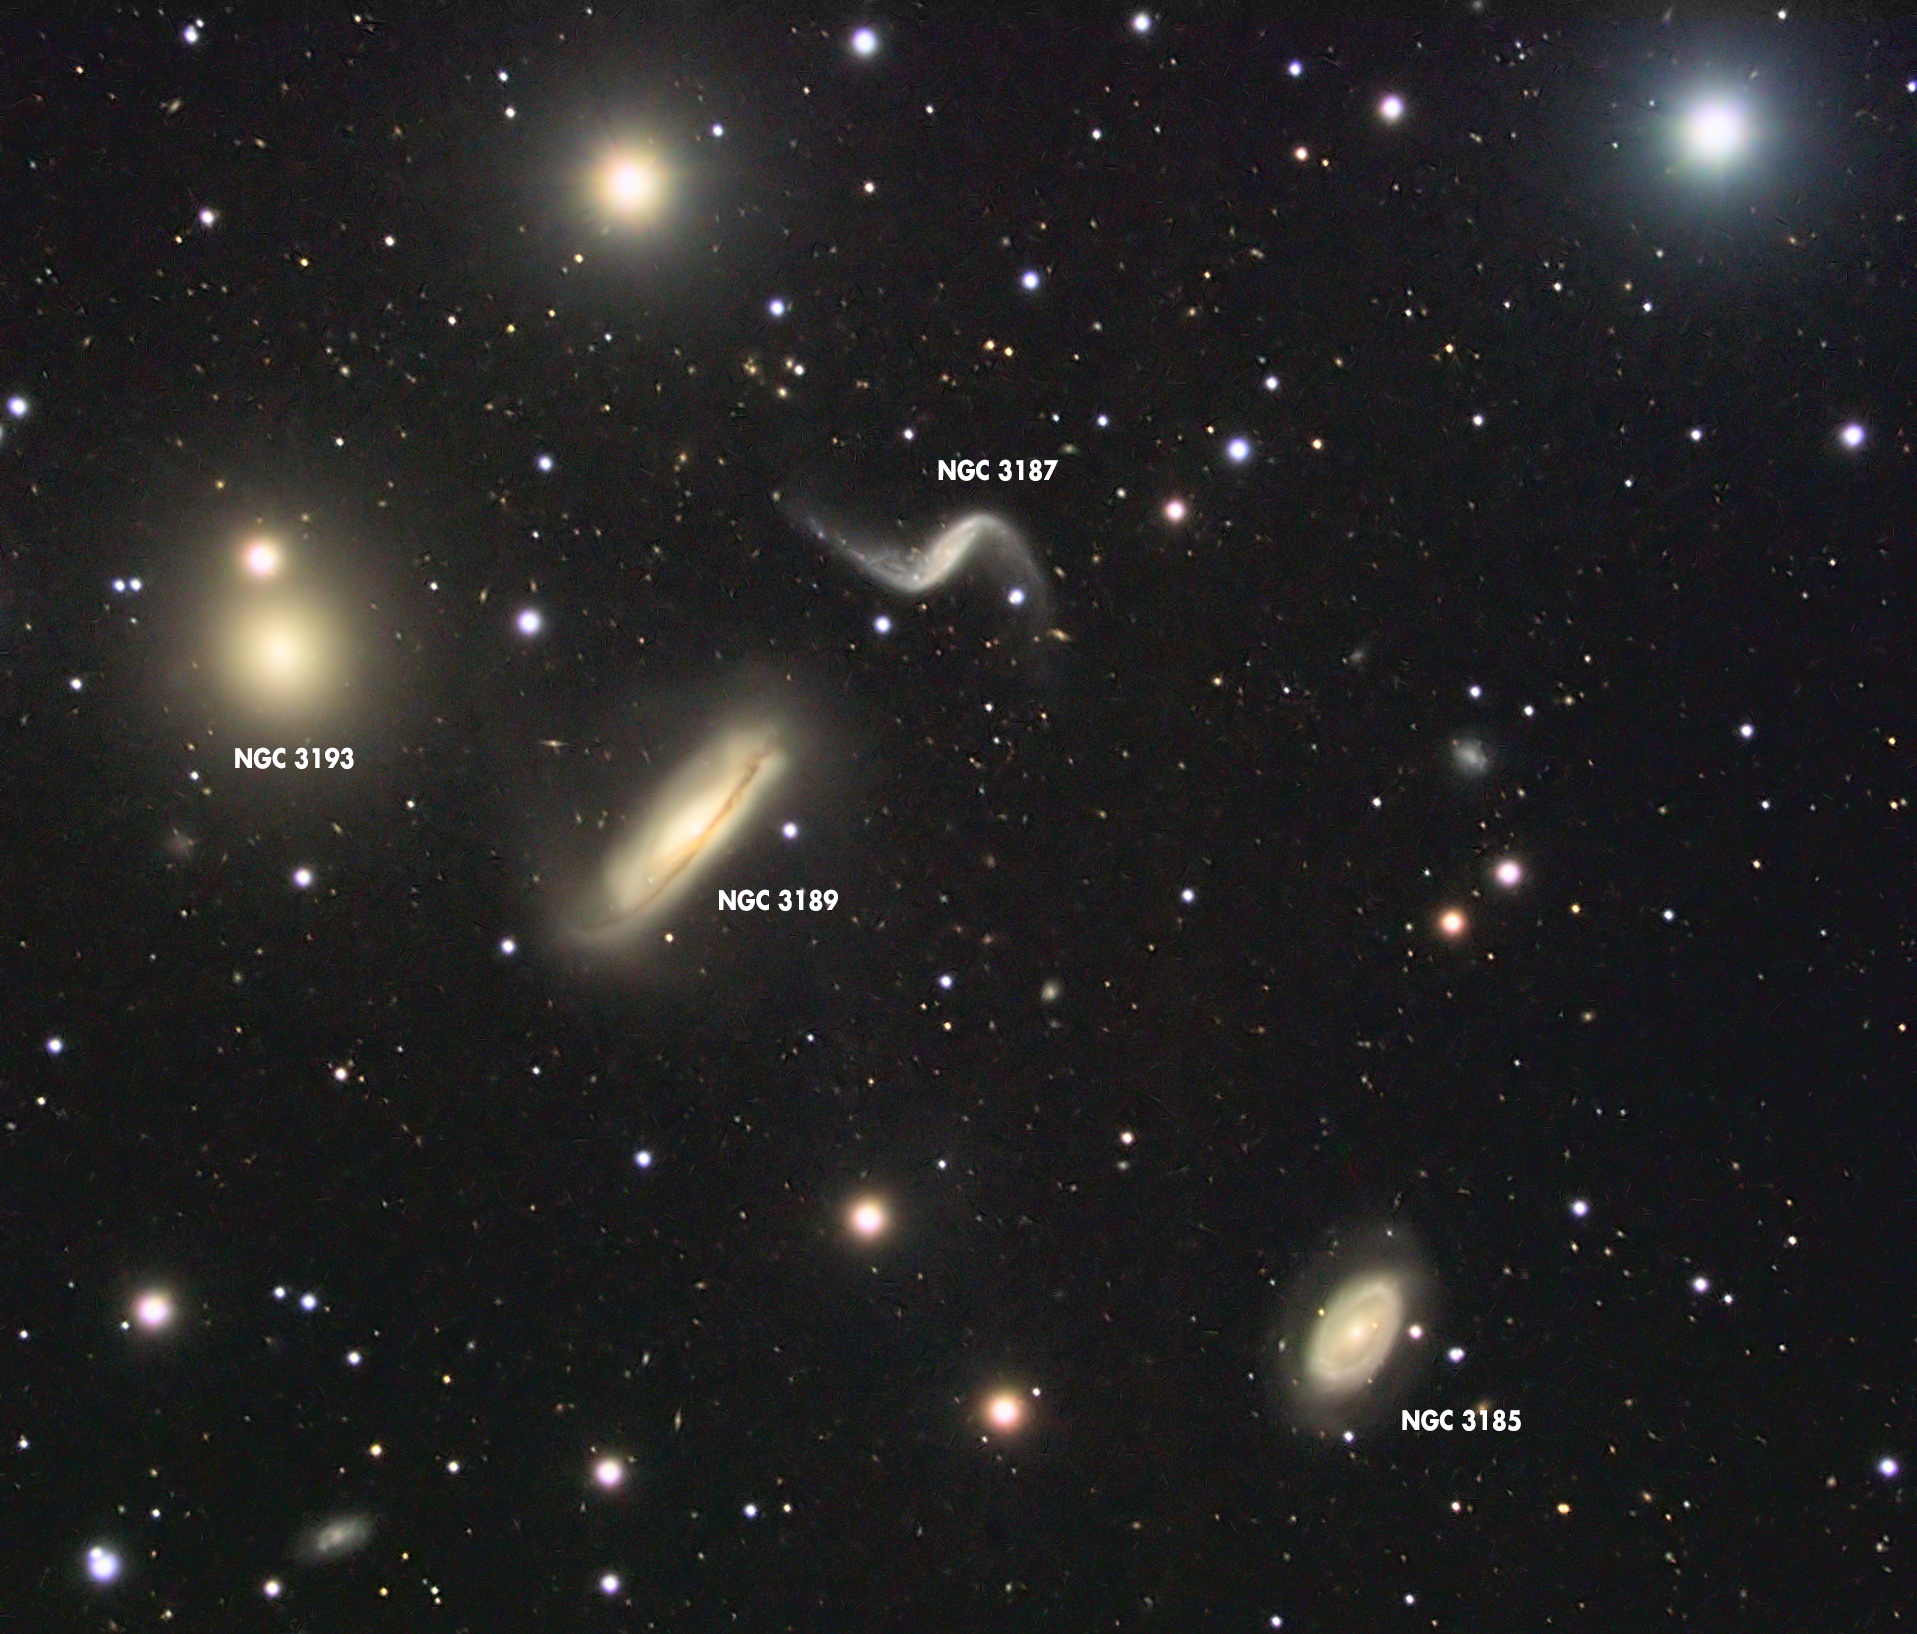 5e0778e3f3c56_NGC3189_XRGB_TGLegende.jpg.19cfb35d0b7ff23c59f44be25af241f6.jpg